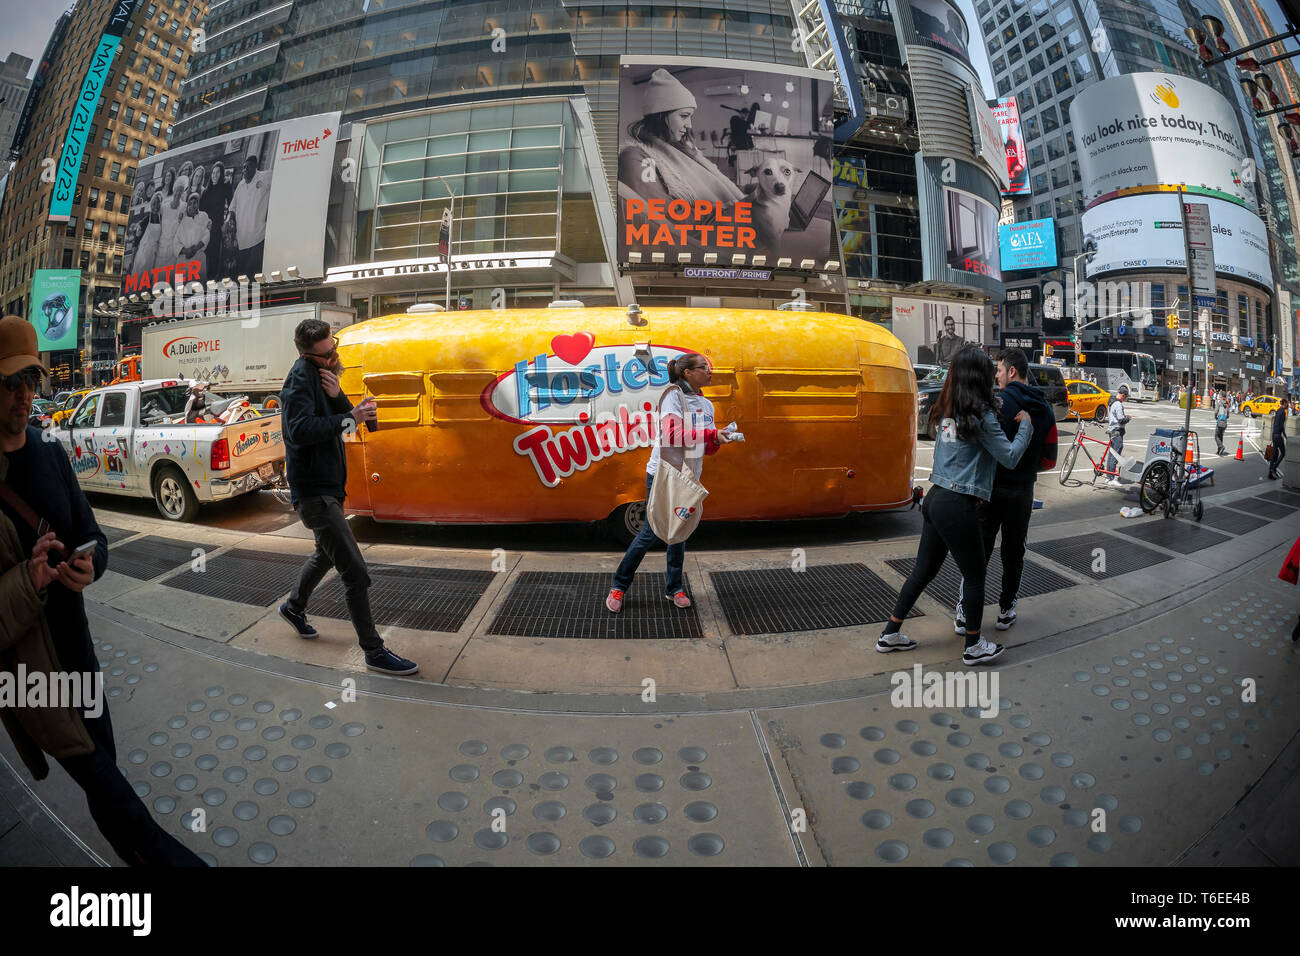 Hostess Marche ÒTwinkiemobileÓ LLC in Times Square a New York per celebrare theÓSweetennialÓ dell'iconico snack company. Il 100 anno-vecchio marchio distribuito gratuitamente prodotti Hostess, dotate di loro Hostess tortine di compleanno, così come sfilando il ÒTwinkie KidÓ mascotte e la Twinkiemobile, decorato rimorchio Airstream.(© Richard B. Levine) Foto Stock